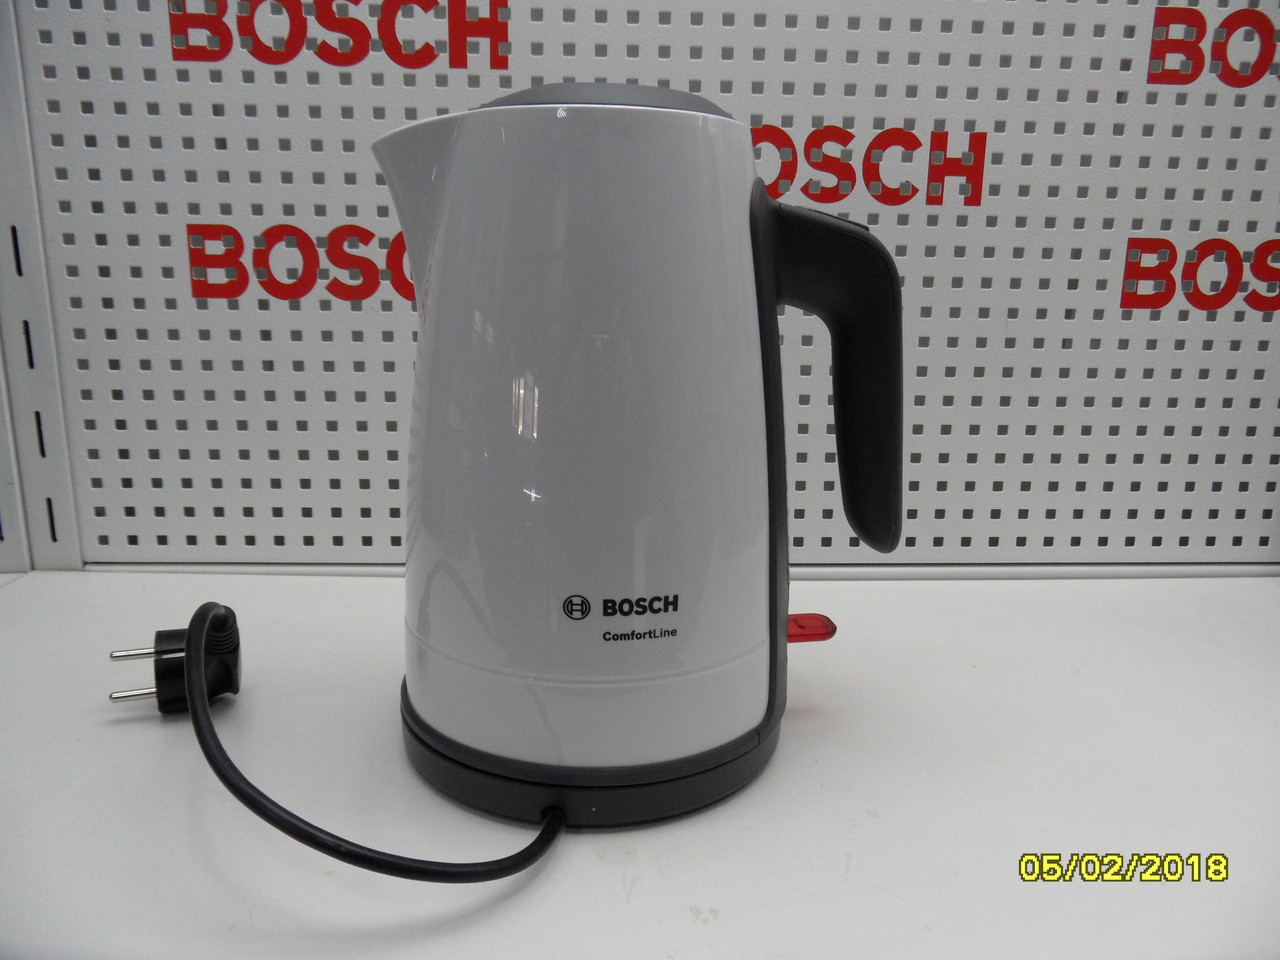 Електрочайник Bosch TWK6A011 пластиковий корпус